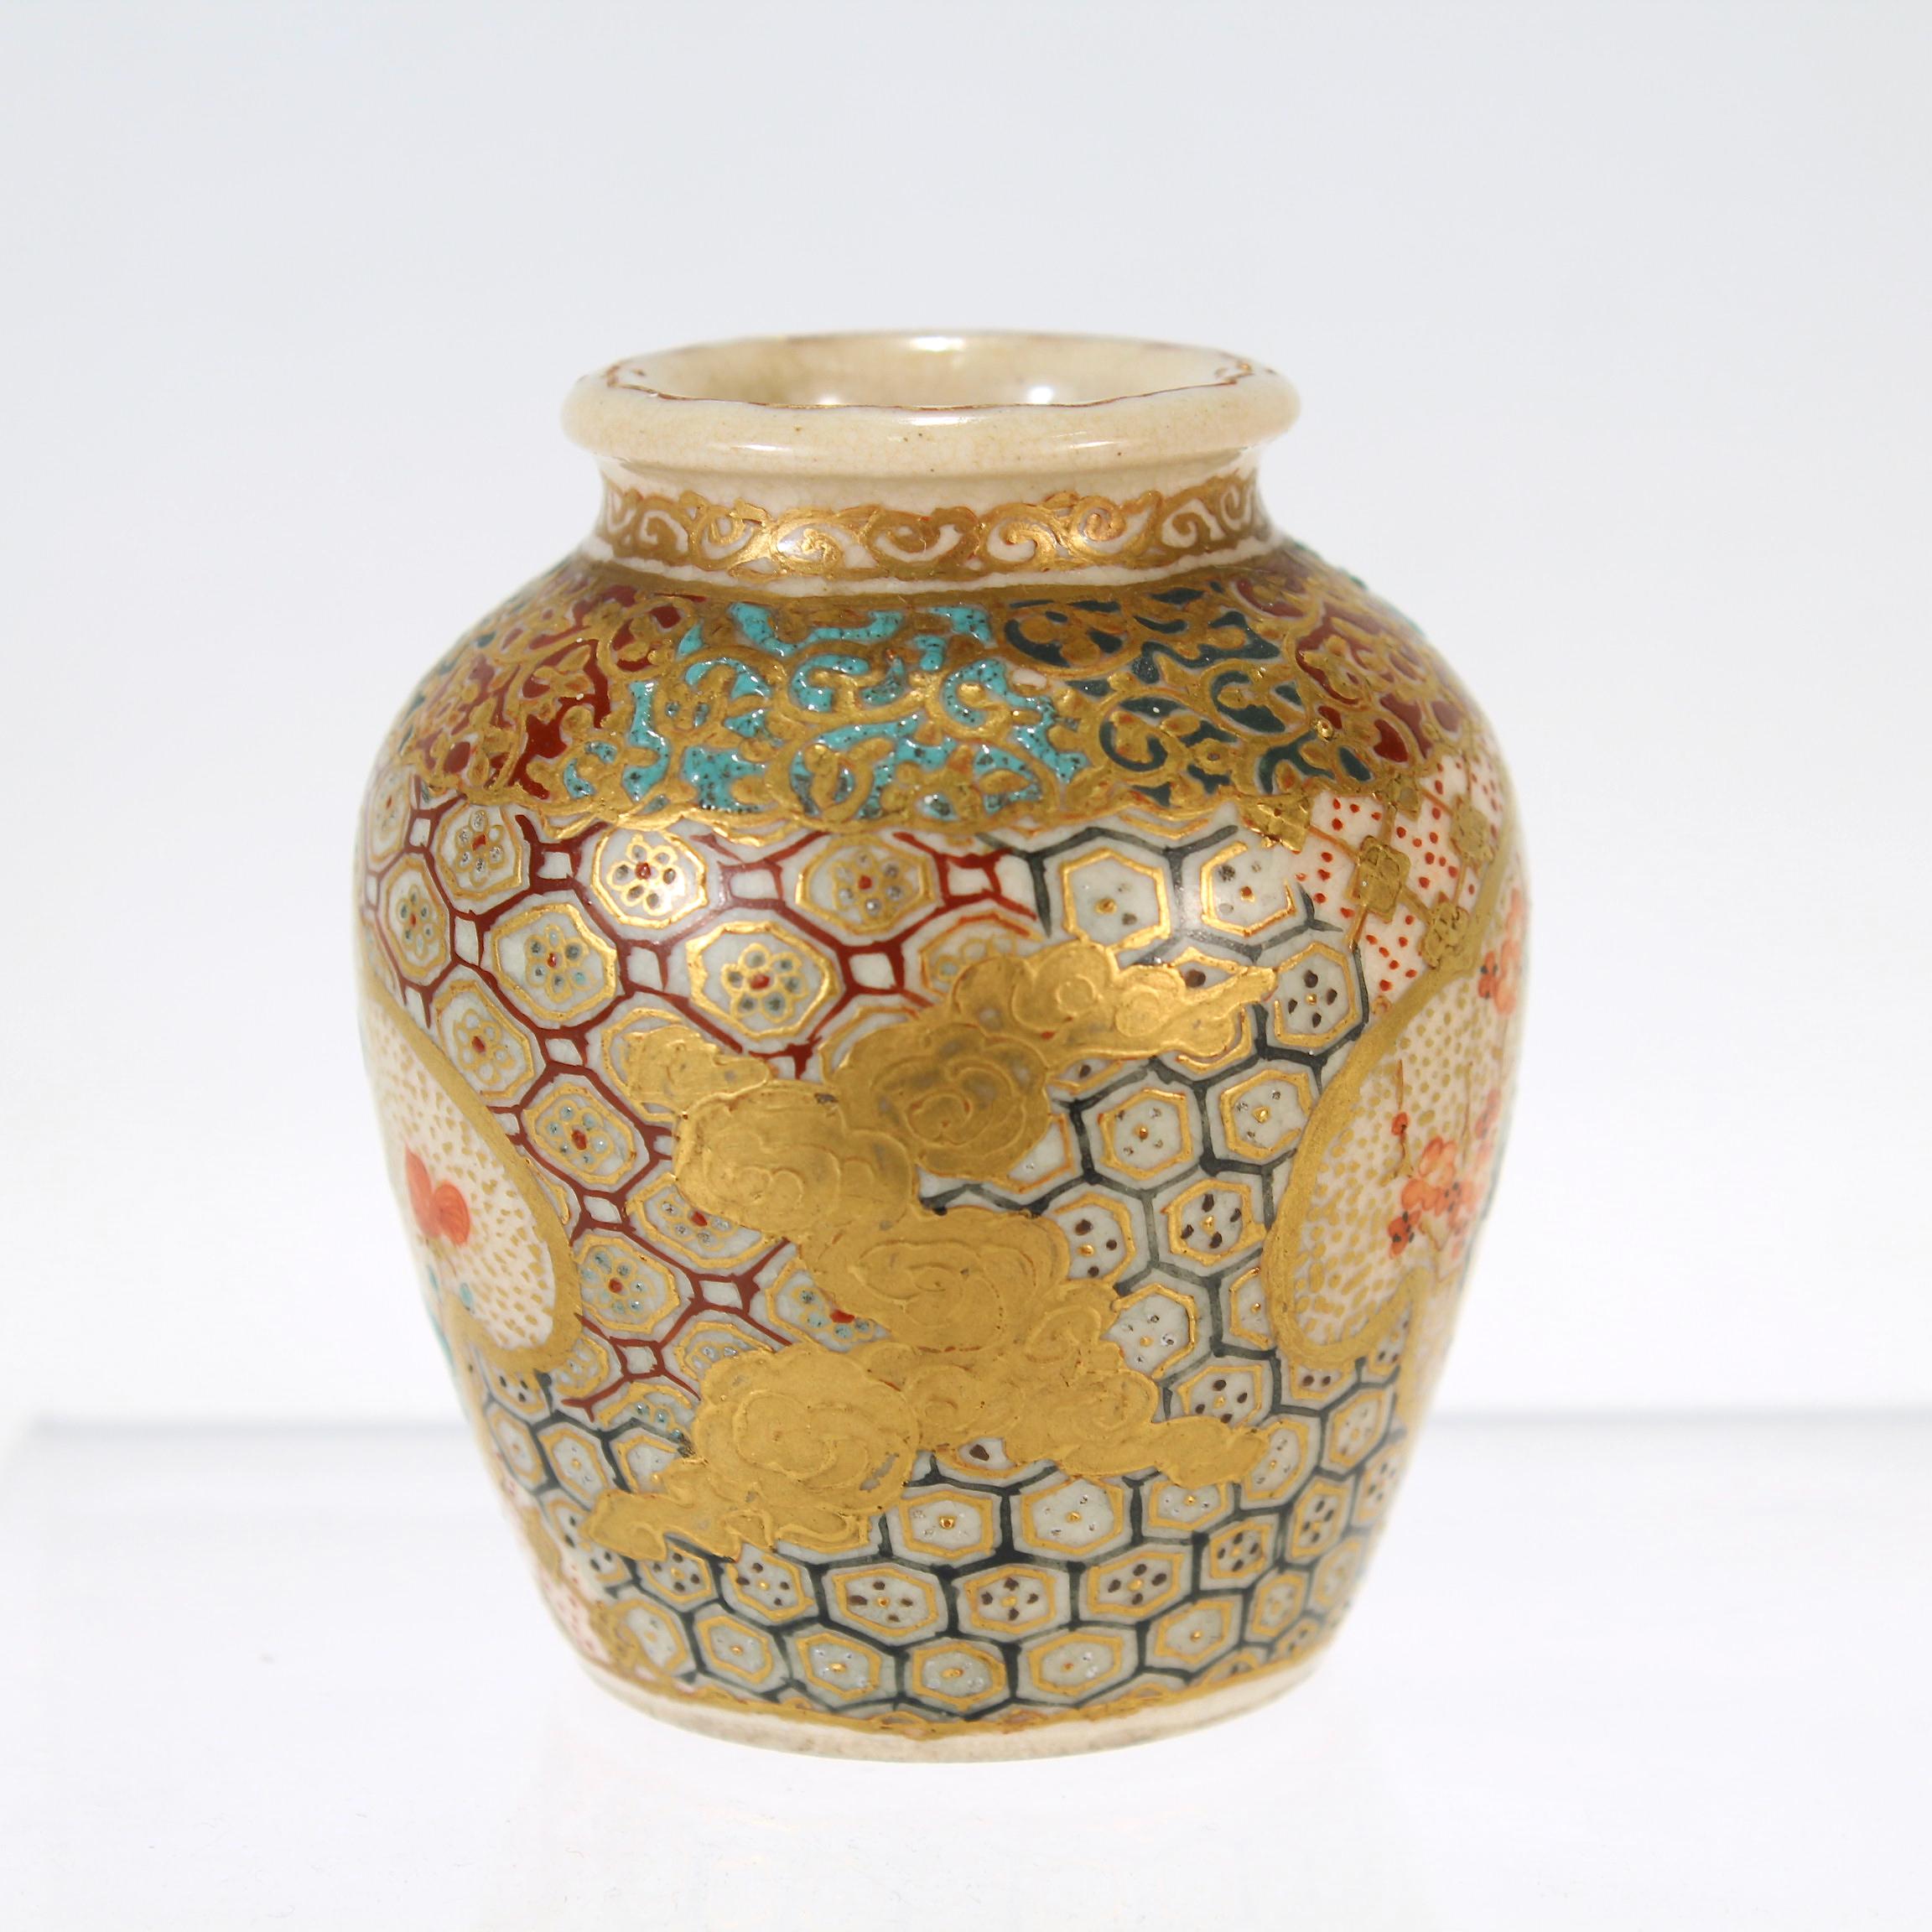 Eine feine, winzige, antike japanische Satsuma-Keramik-Vase.

Durchgehend mit Vergoldung und erhabener Emaille verziert.

Auf der Vase befinden sich zwei Kartuschen, die mit roten Blumen (möglicherweise Pfingstrosen) und Vögeln verziert